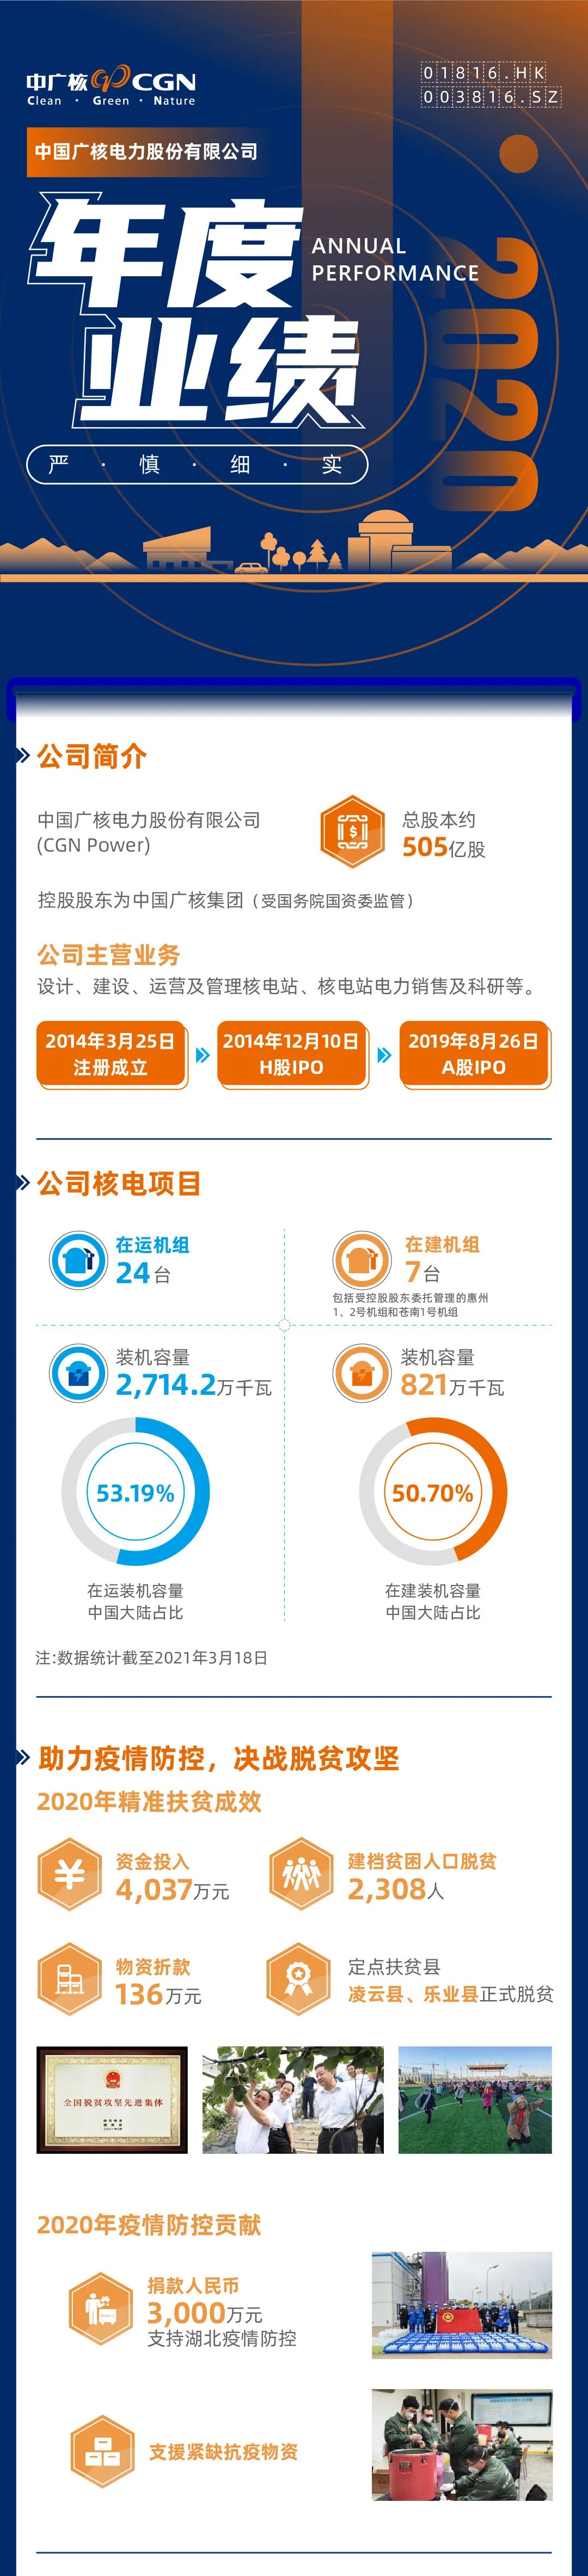 一张图读懂中国广核电力股份有限公司2020年度业绩